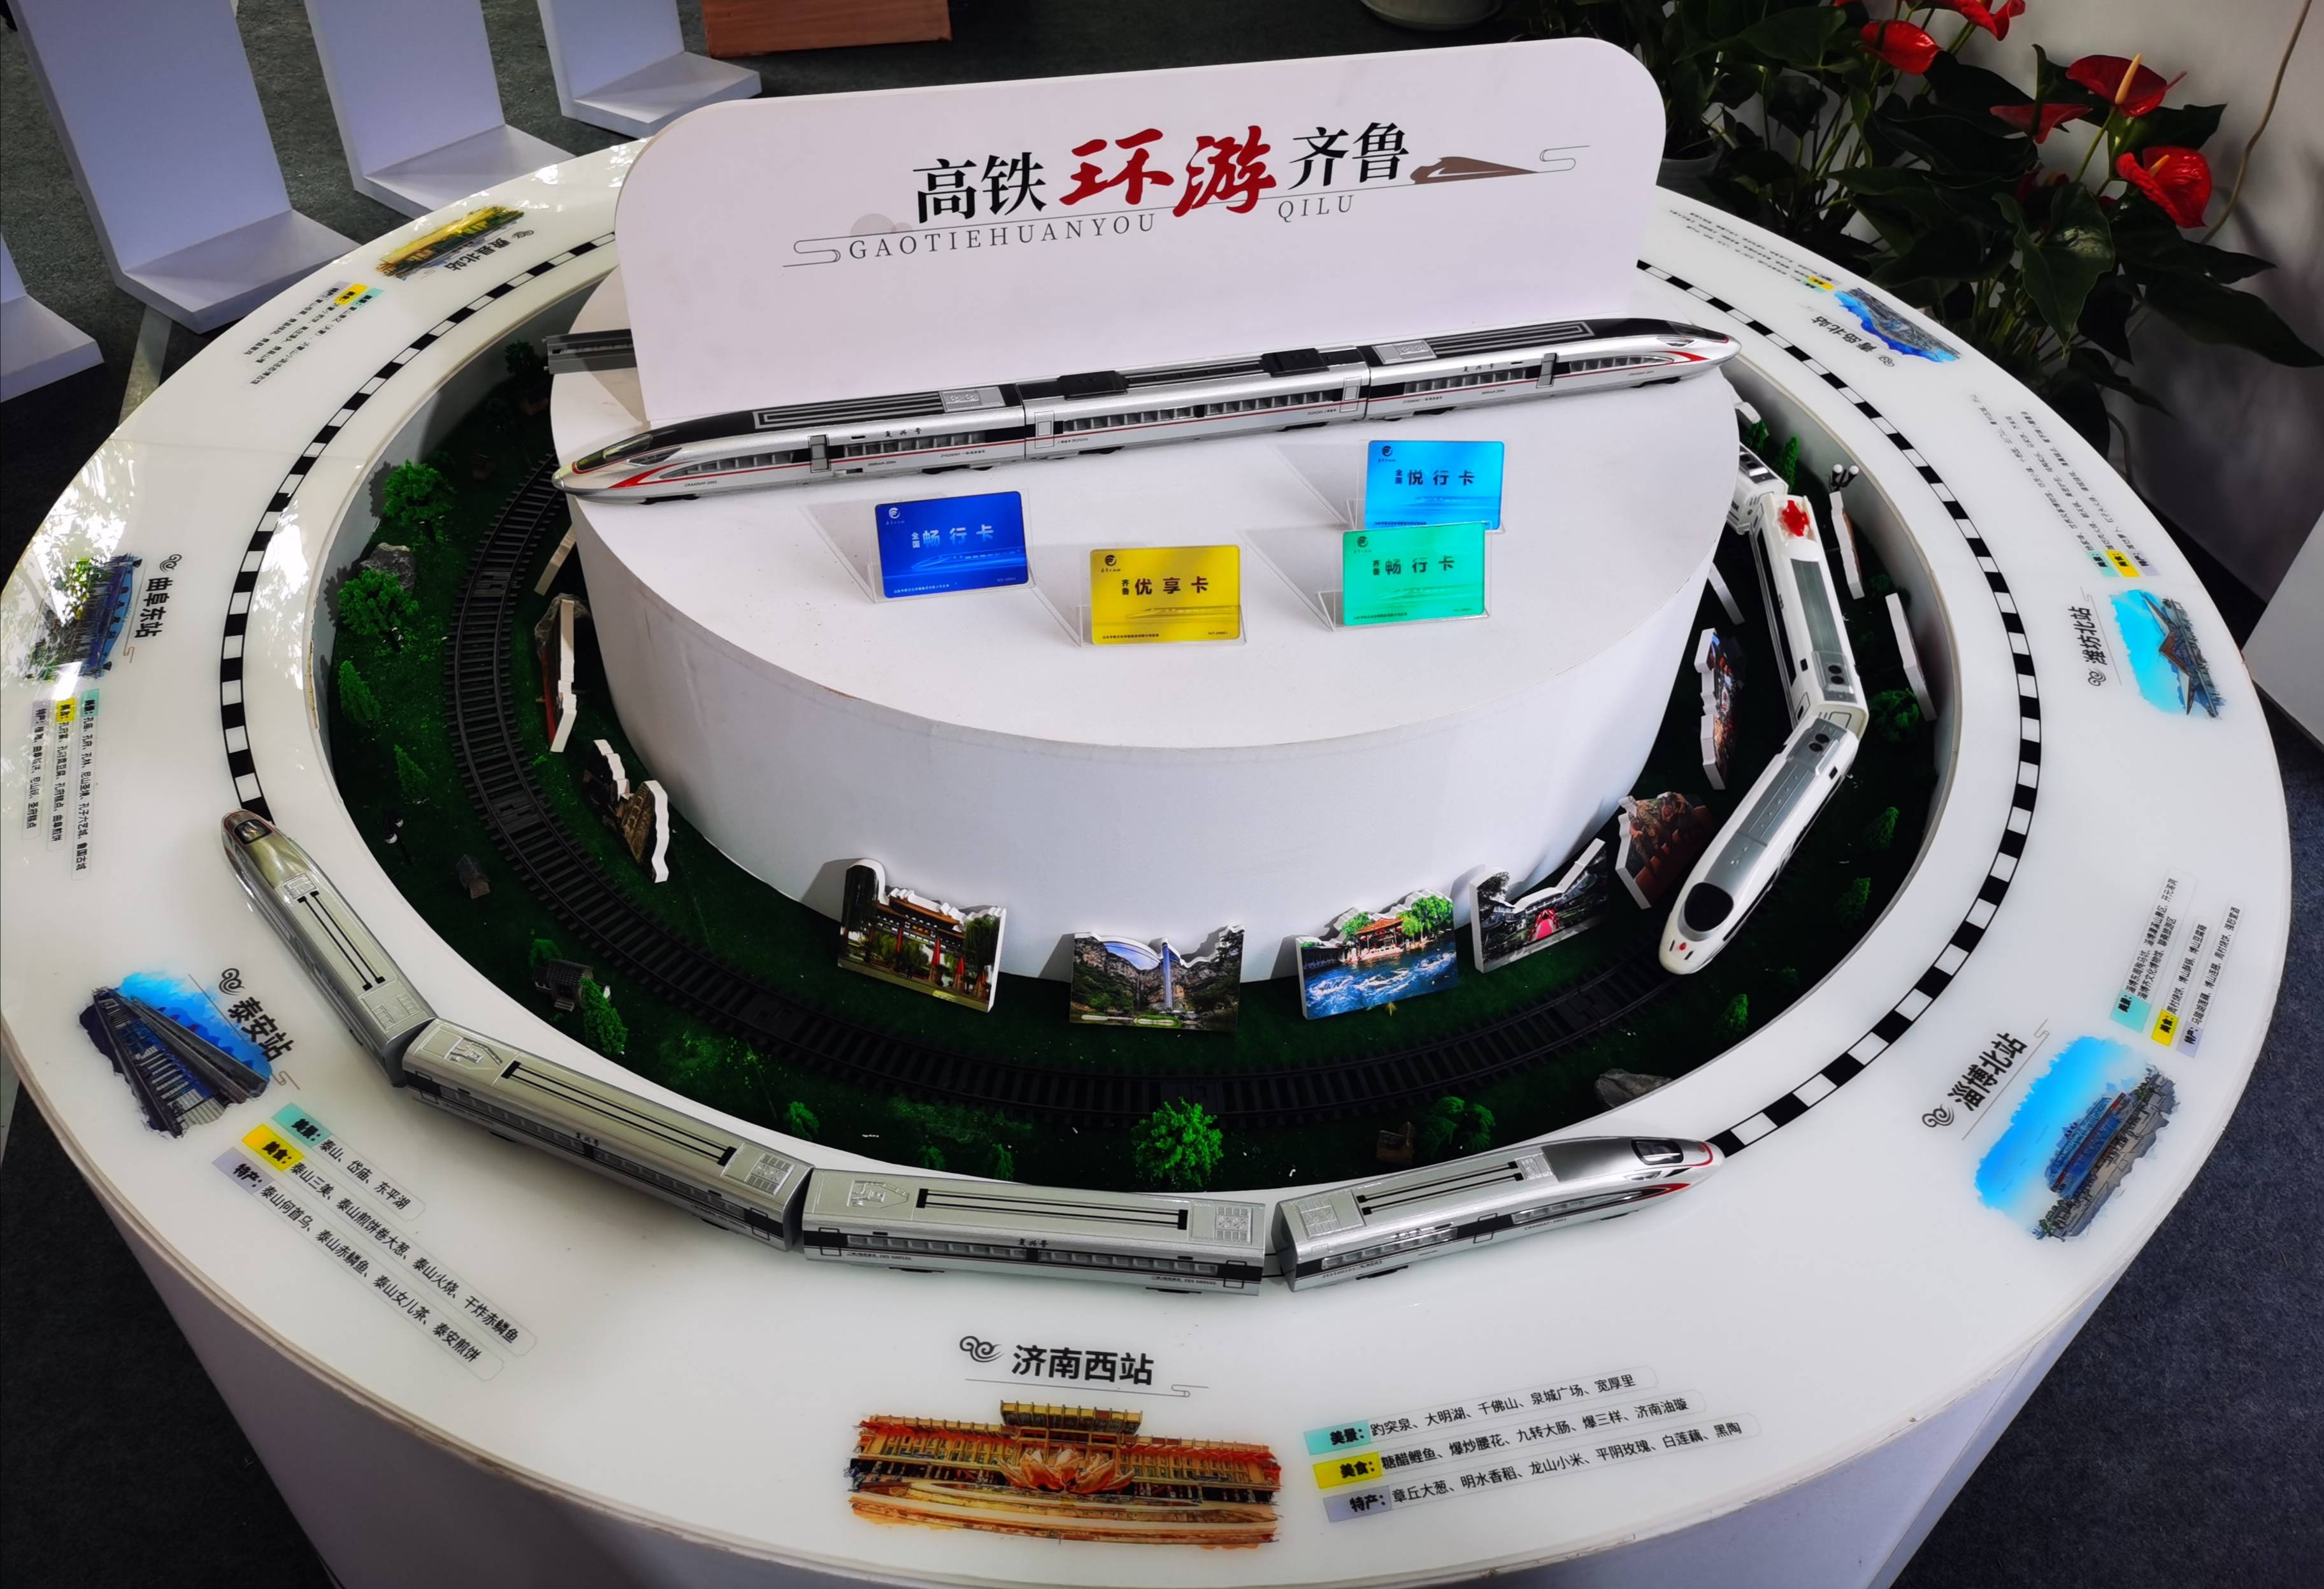 中国铁路济南局企业logo正式发布 同时推出一系列便民新举措